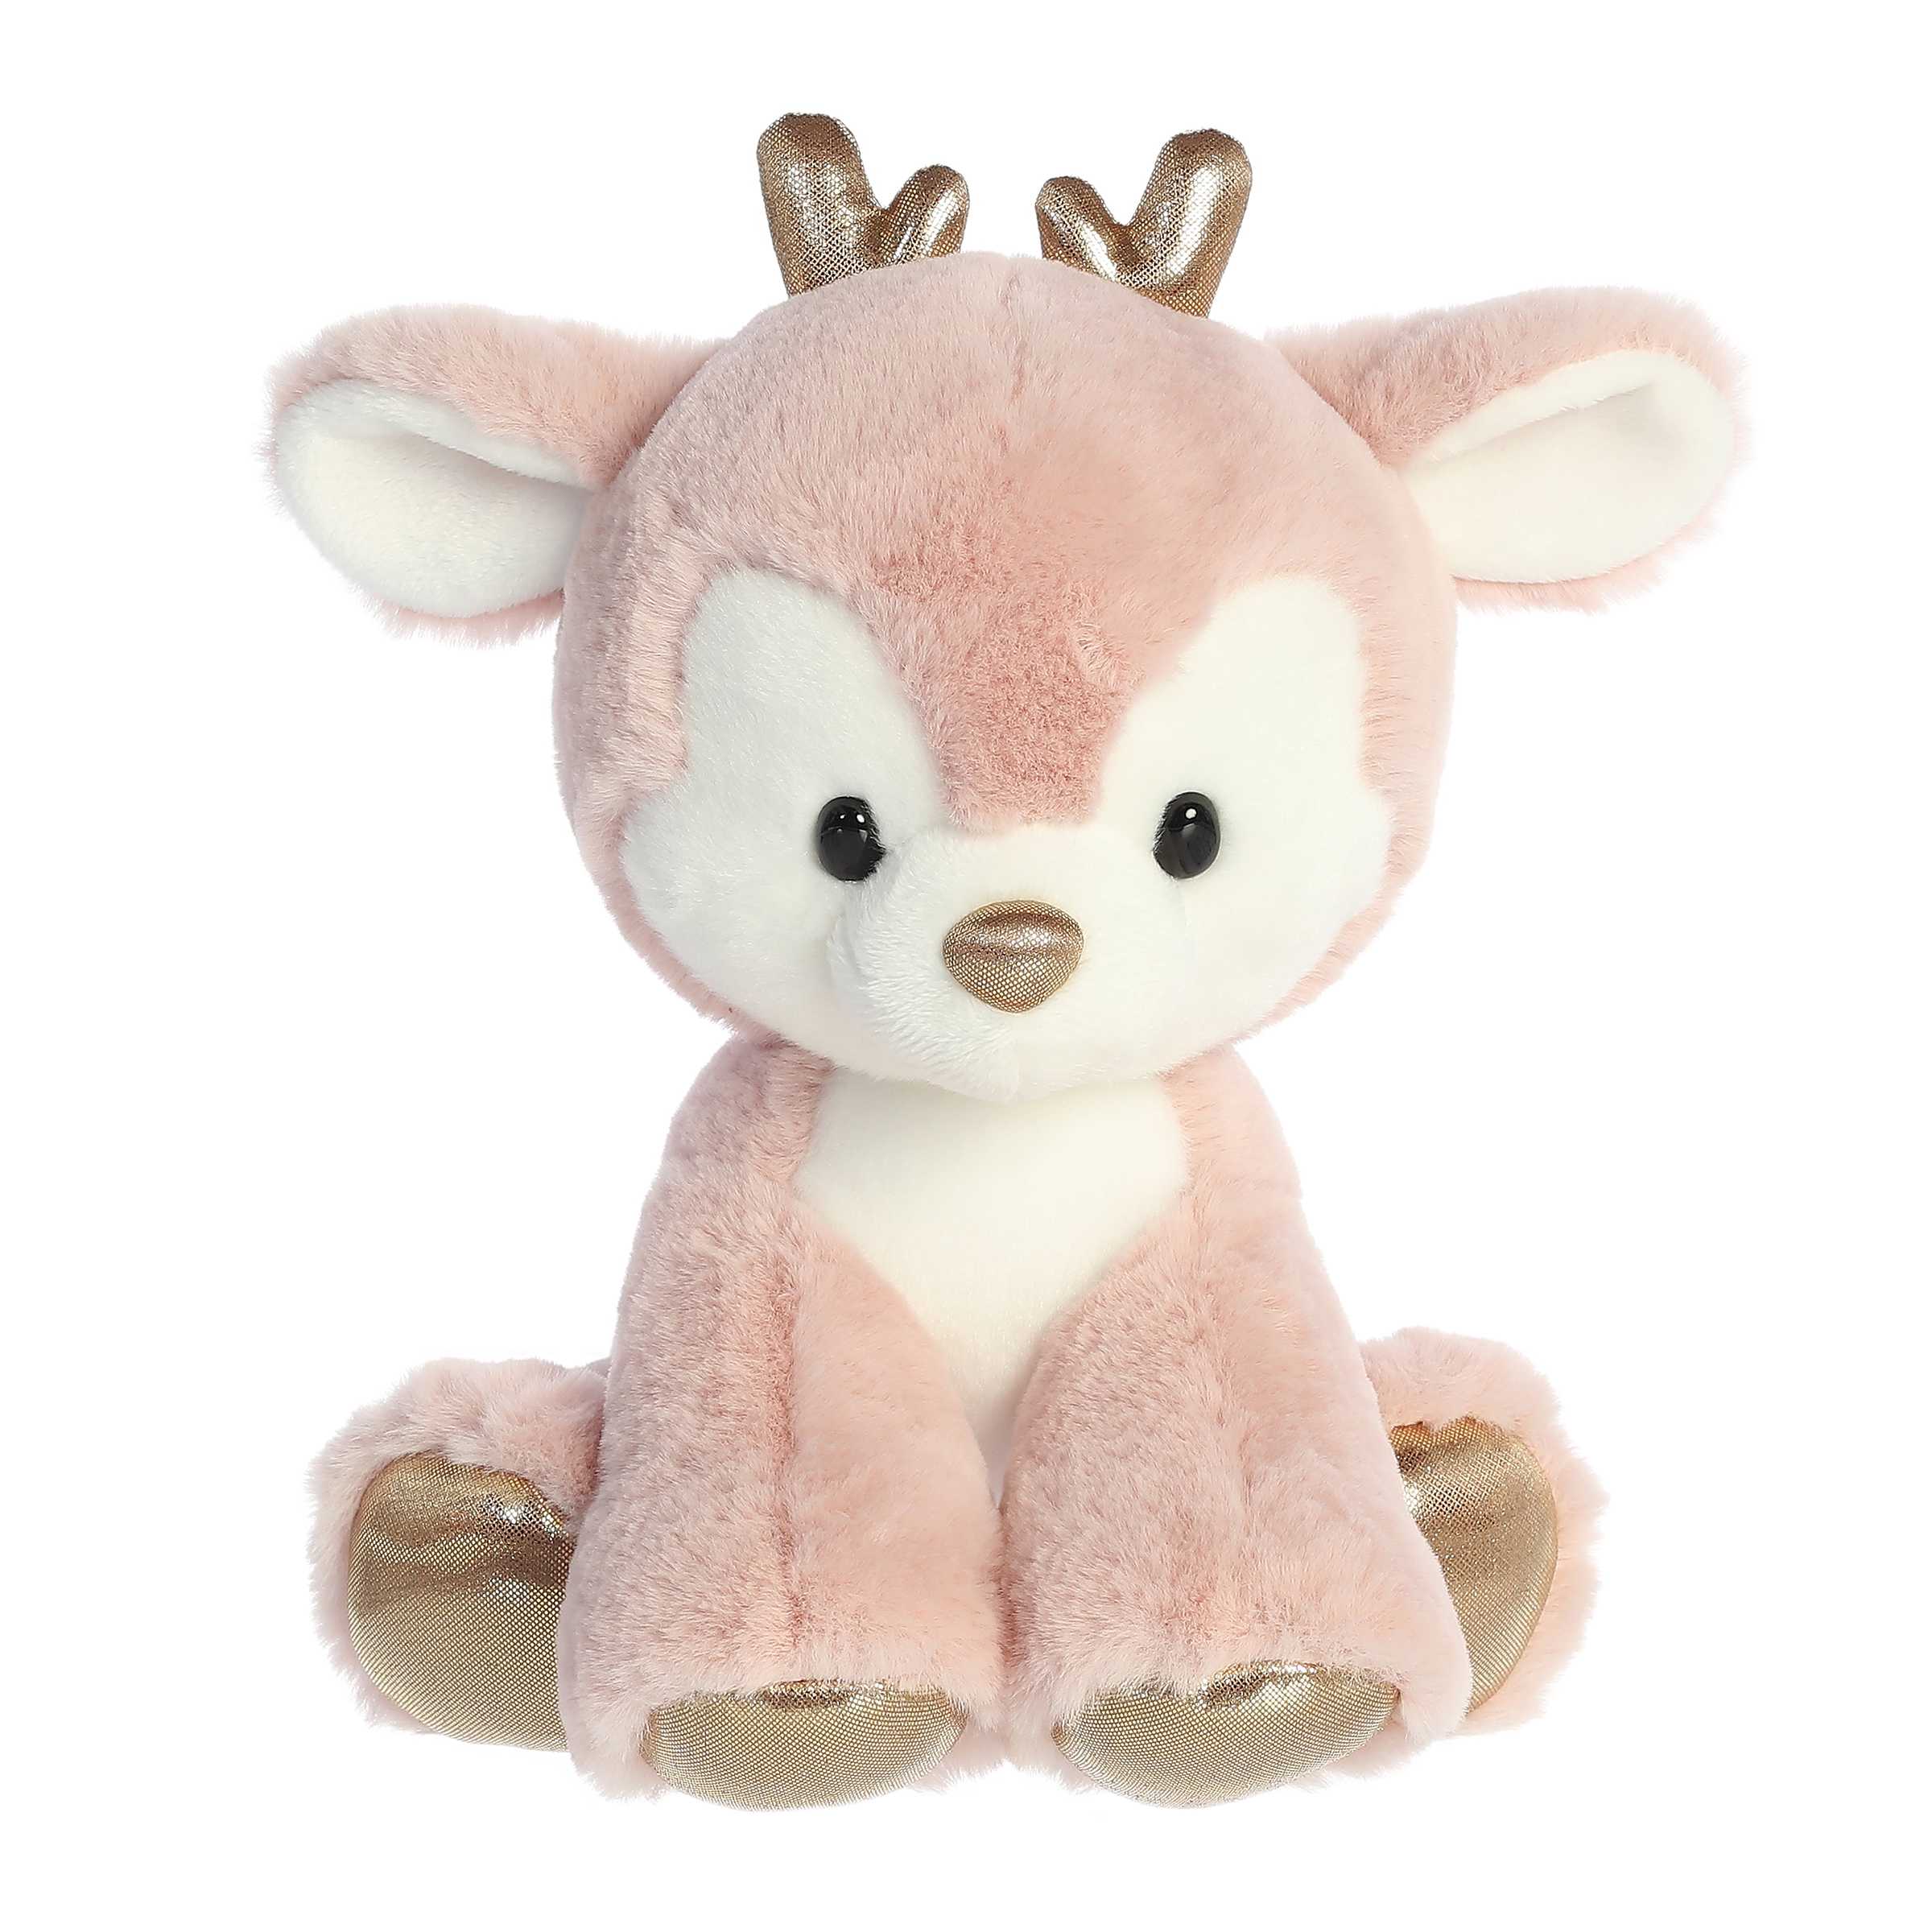 Dashing Reindeer - Festive Pink Stuffed Animals - Aurora – Aurora®